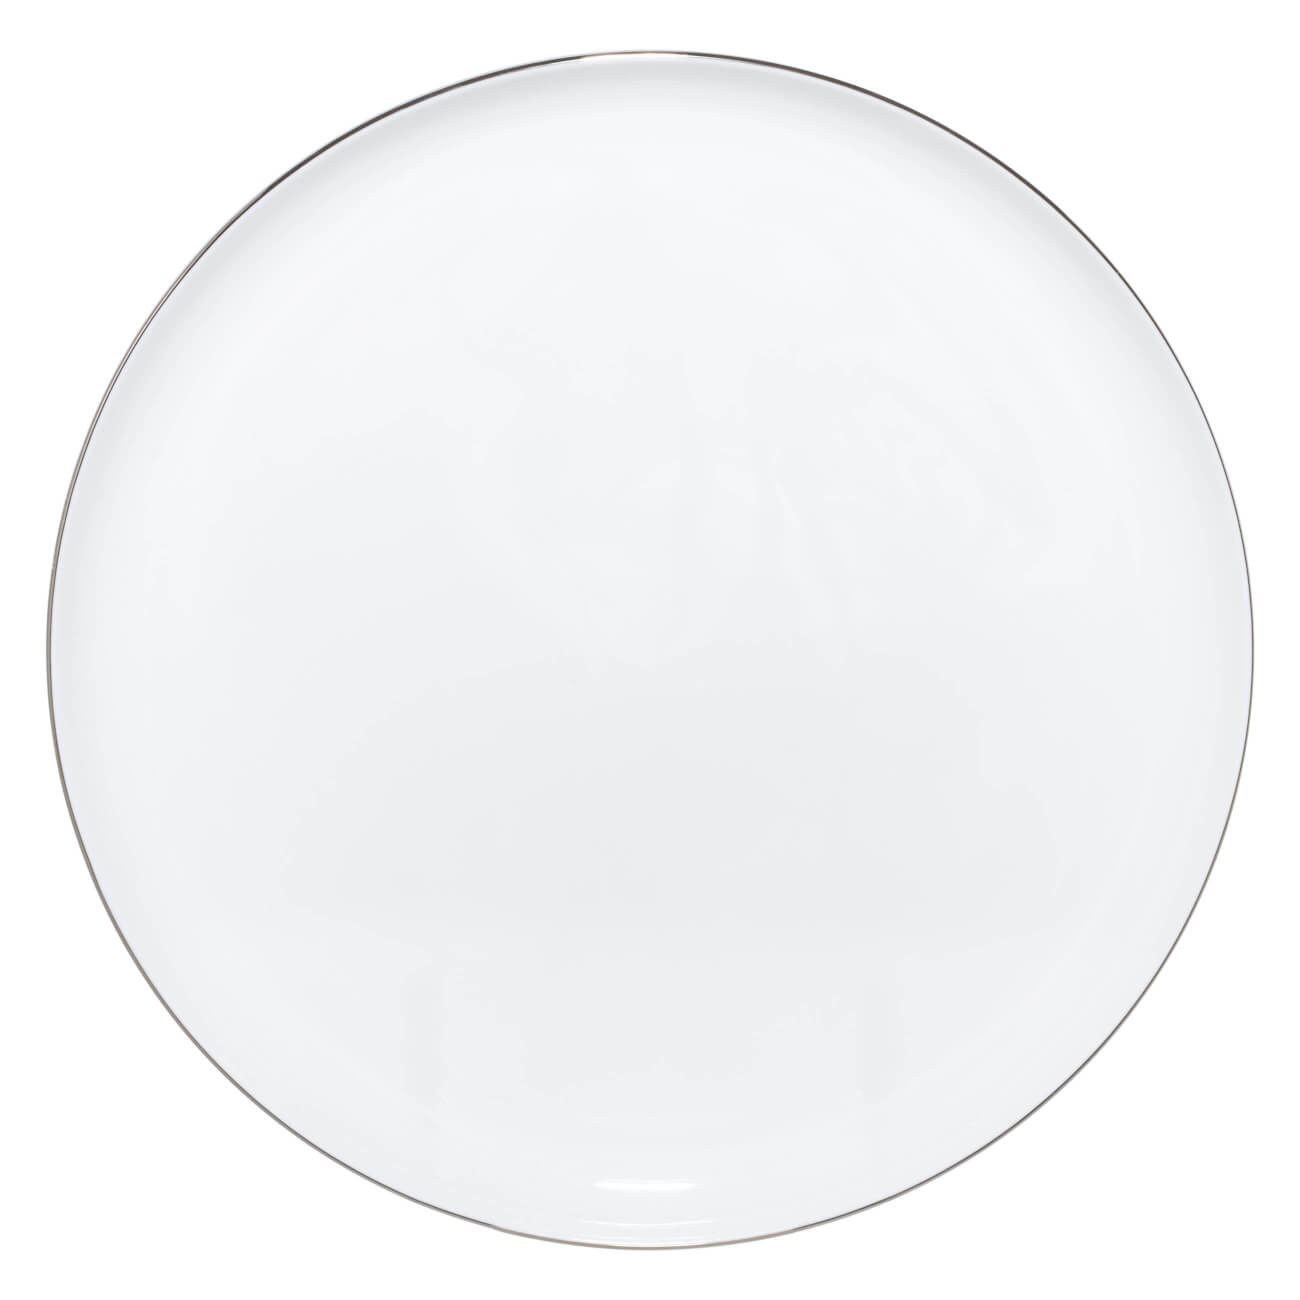 Тарелка обеденная, 28 см, фарфор F, Antarctica тарелка закусочная 24 см 2 шт фарфор f antarctica